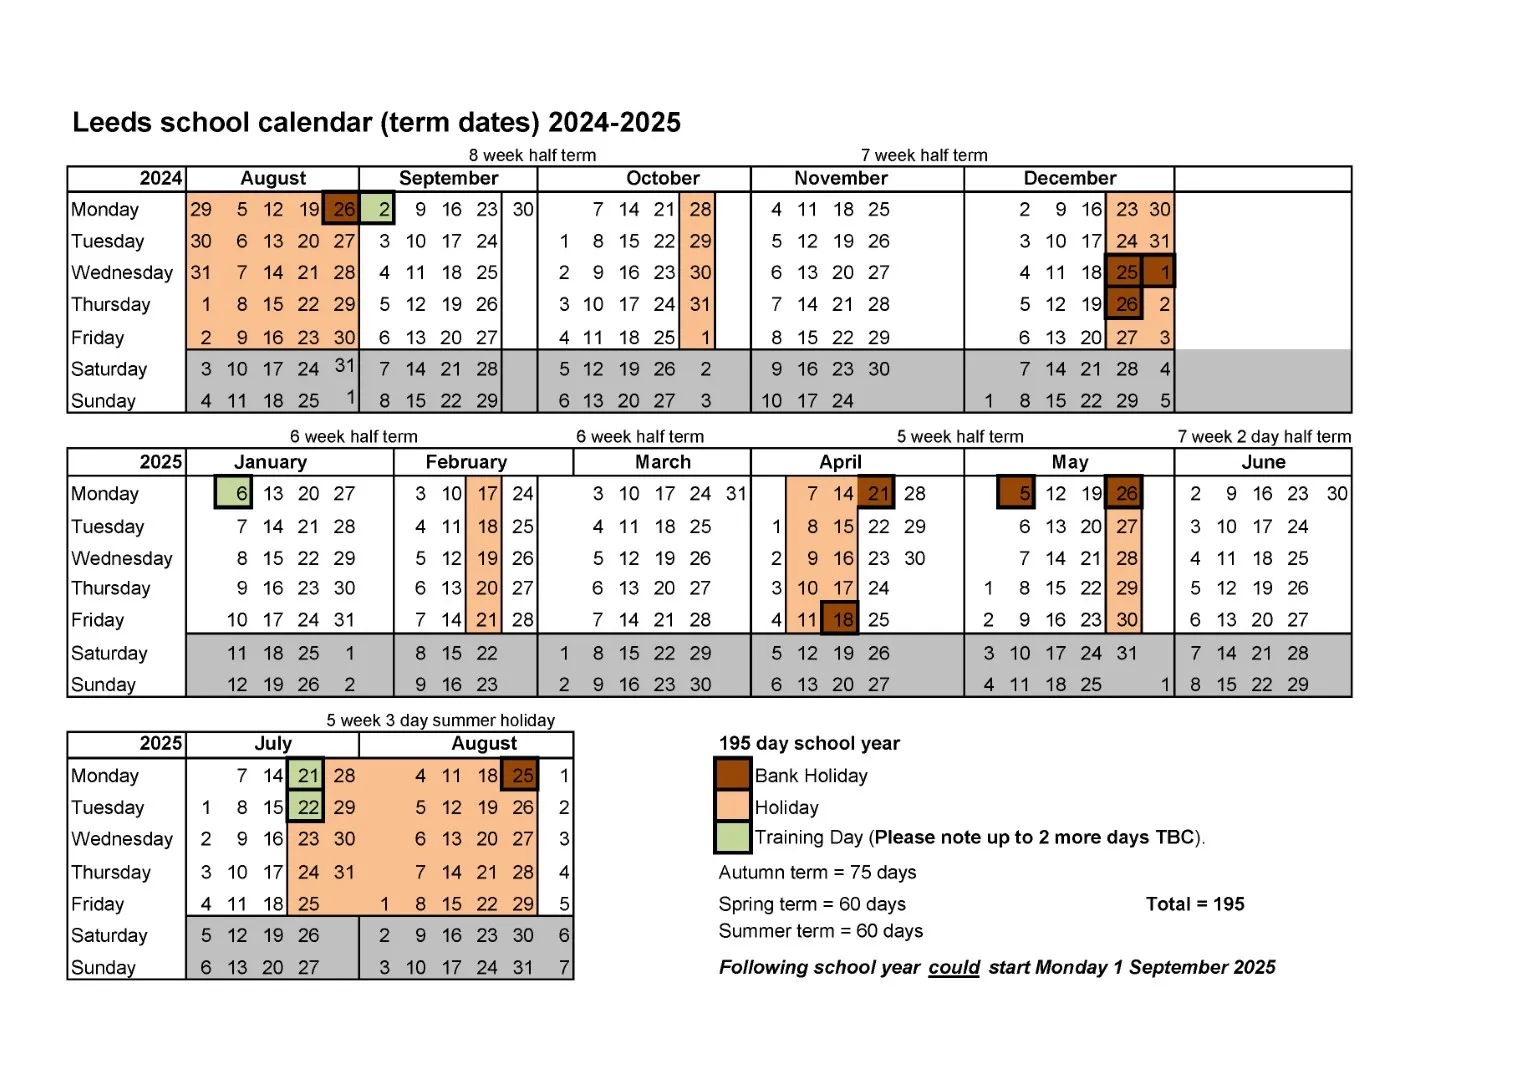 Leeds school calendar 2024-25 (002)